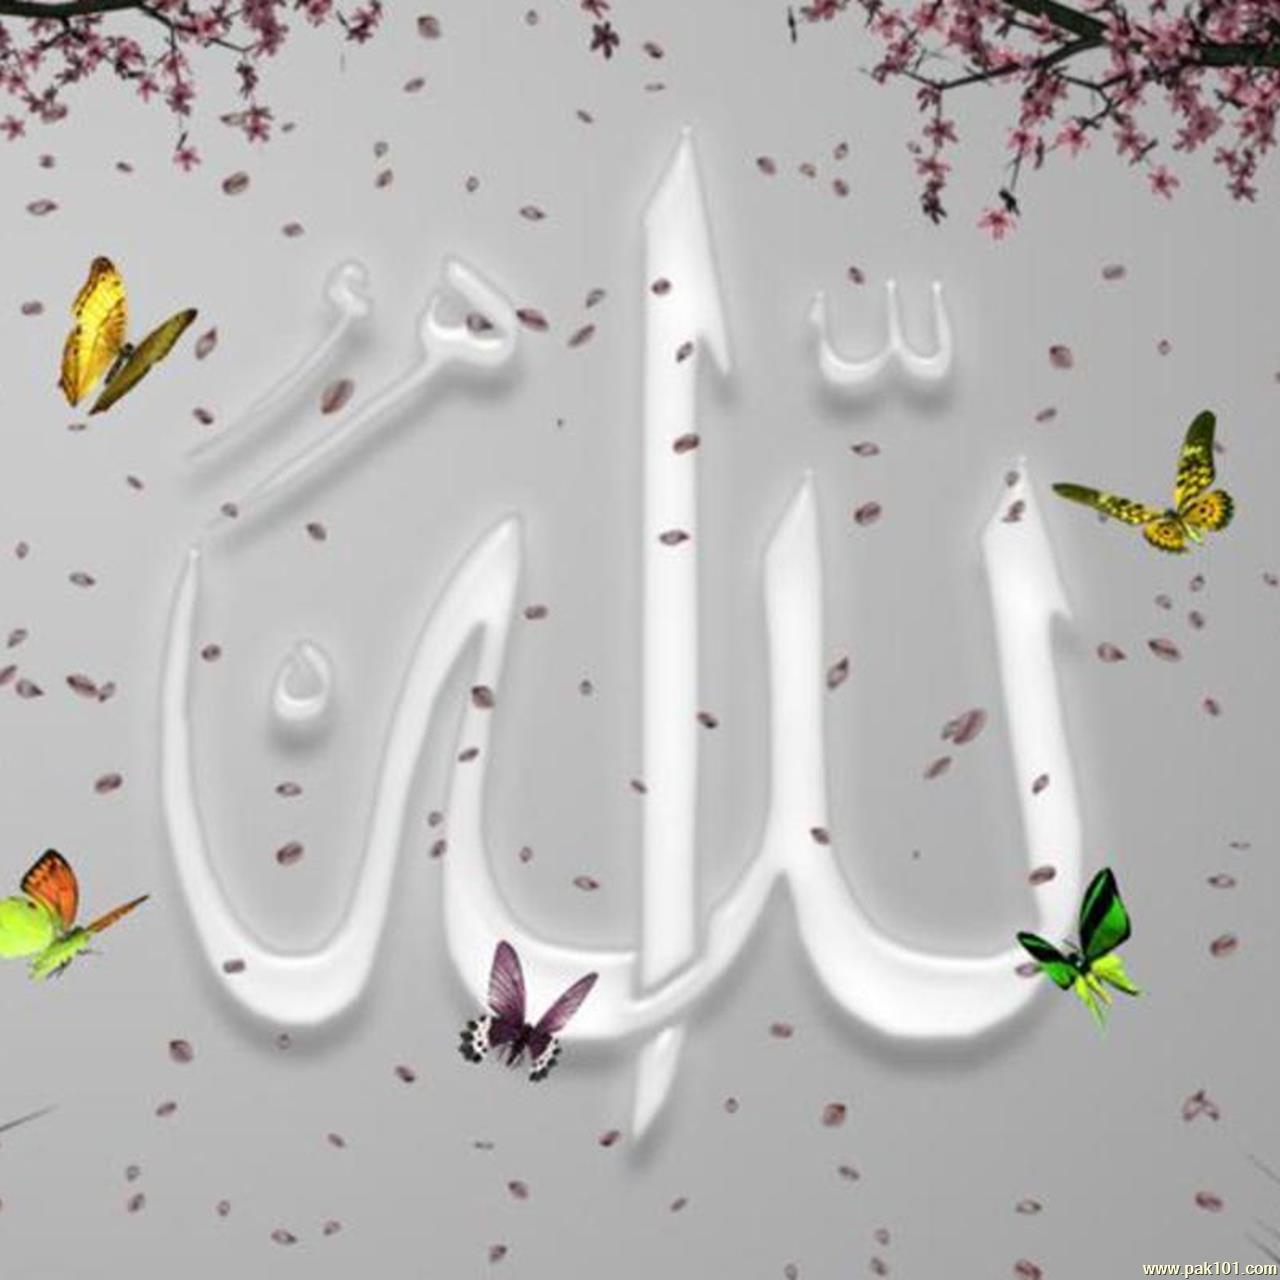 Beautiful Name Allah - New Posts Of Allah - HD Wallpaper 